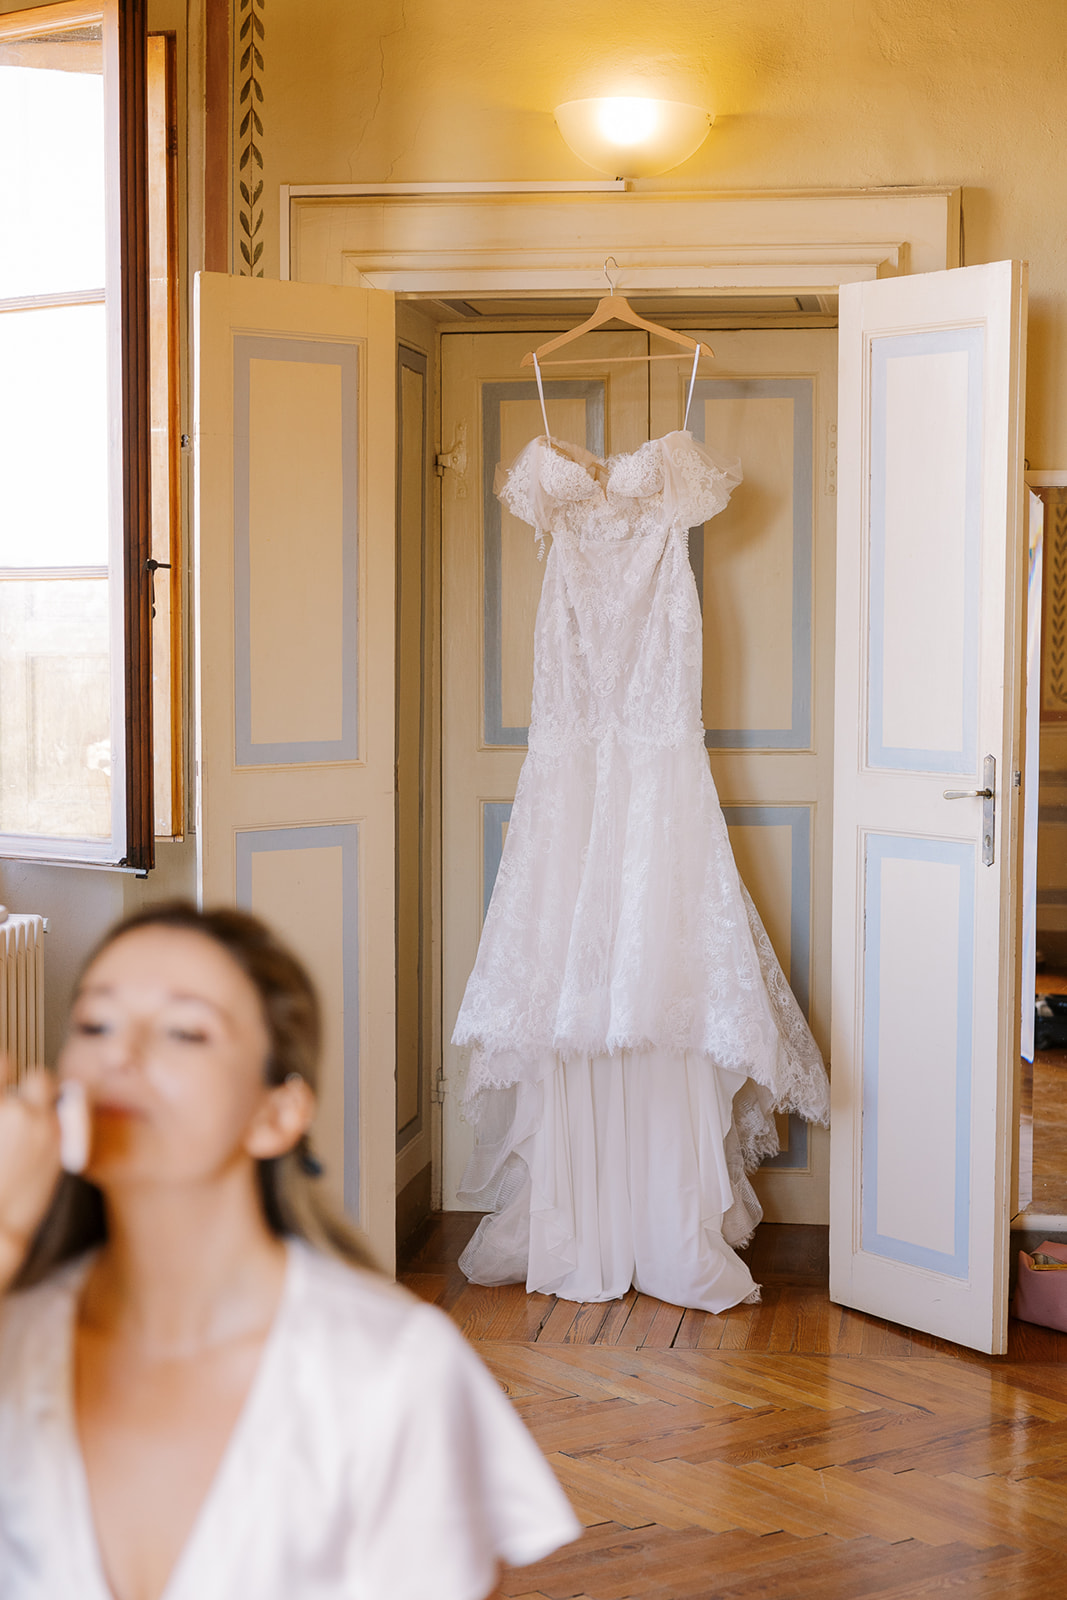 wedding dress hands in doorway behind bride